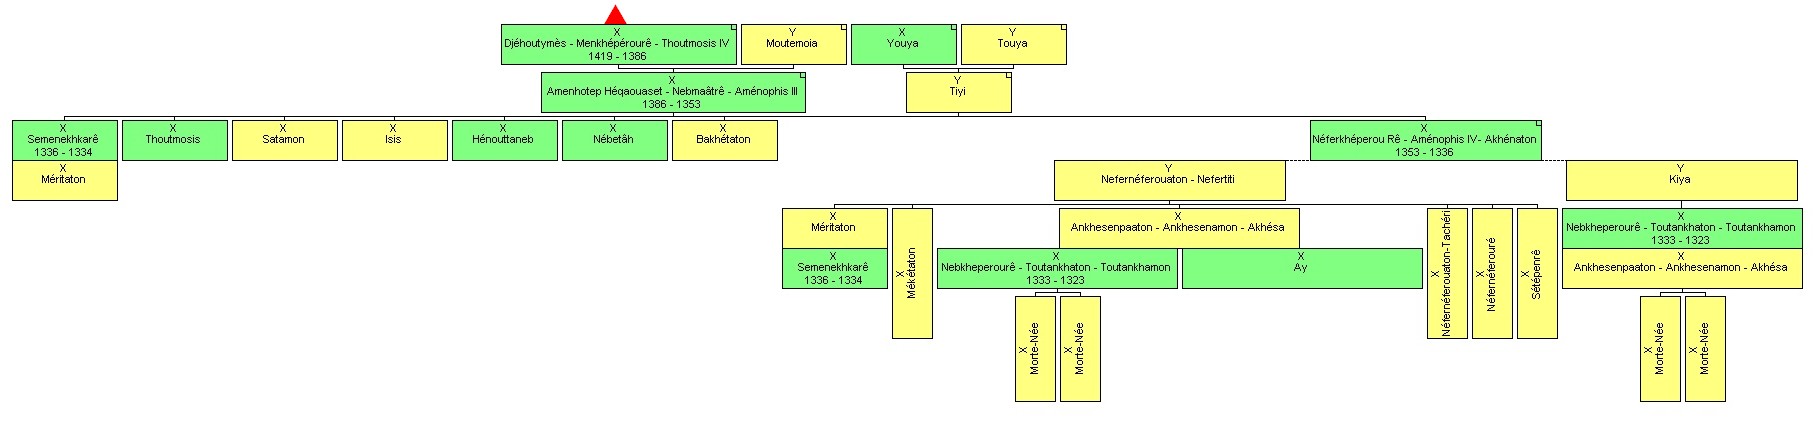 4è tableau - généalogie de Thoutmosis IV à Toutankhamon